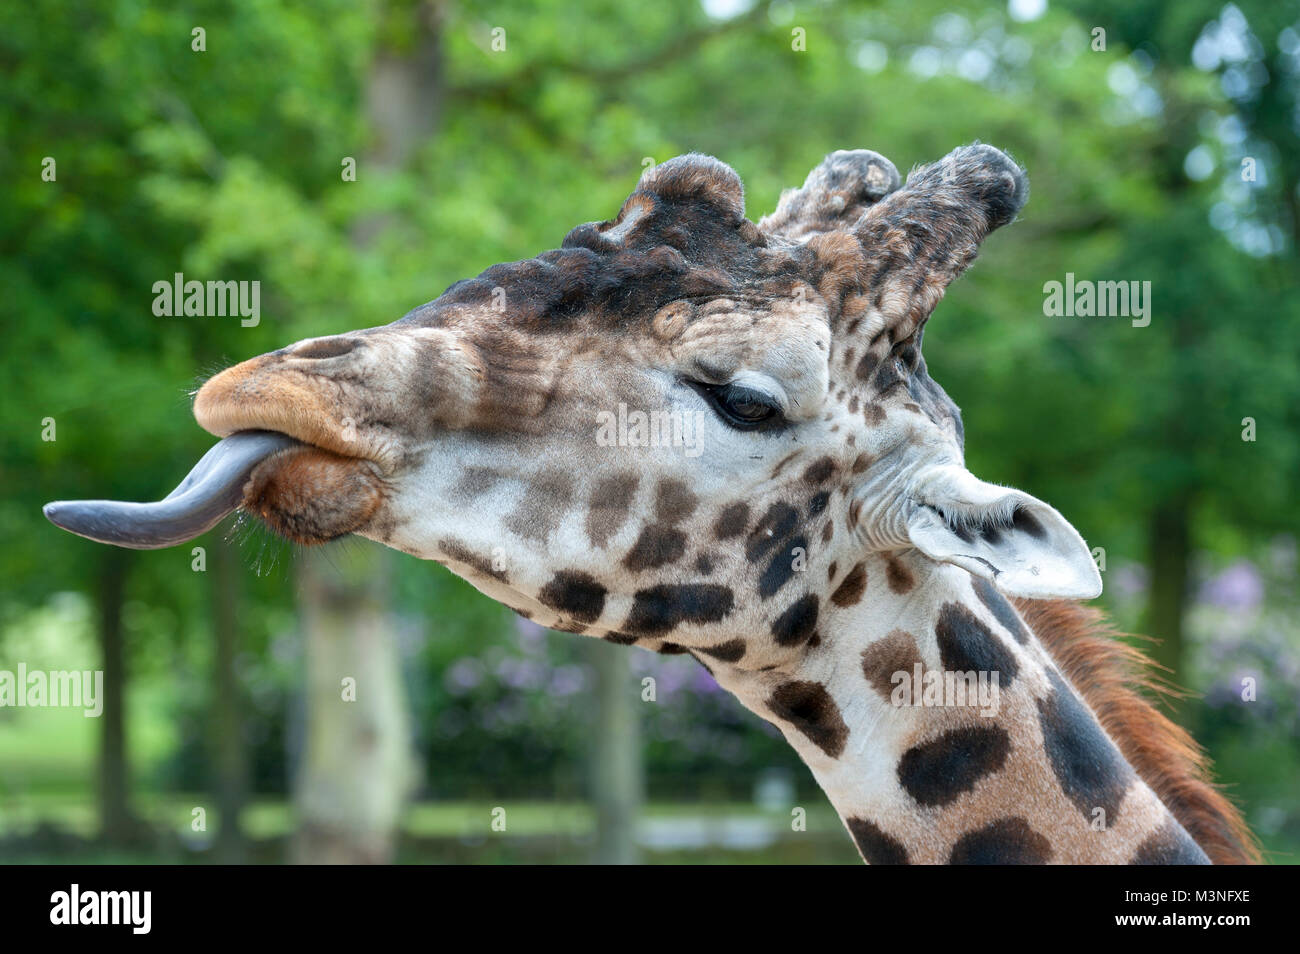 Primo piano di una giraffa il più alto vivono animali terrestri si estende fuori la sua tounge di alimentazione Foto Stock